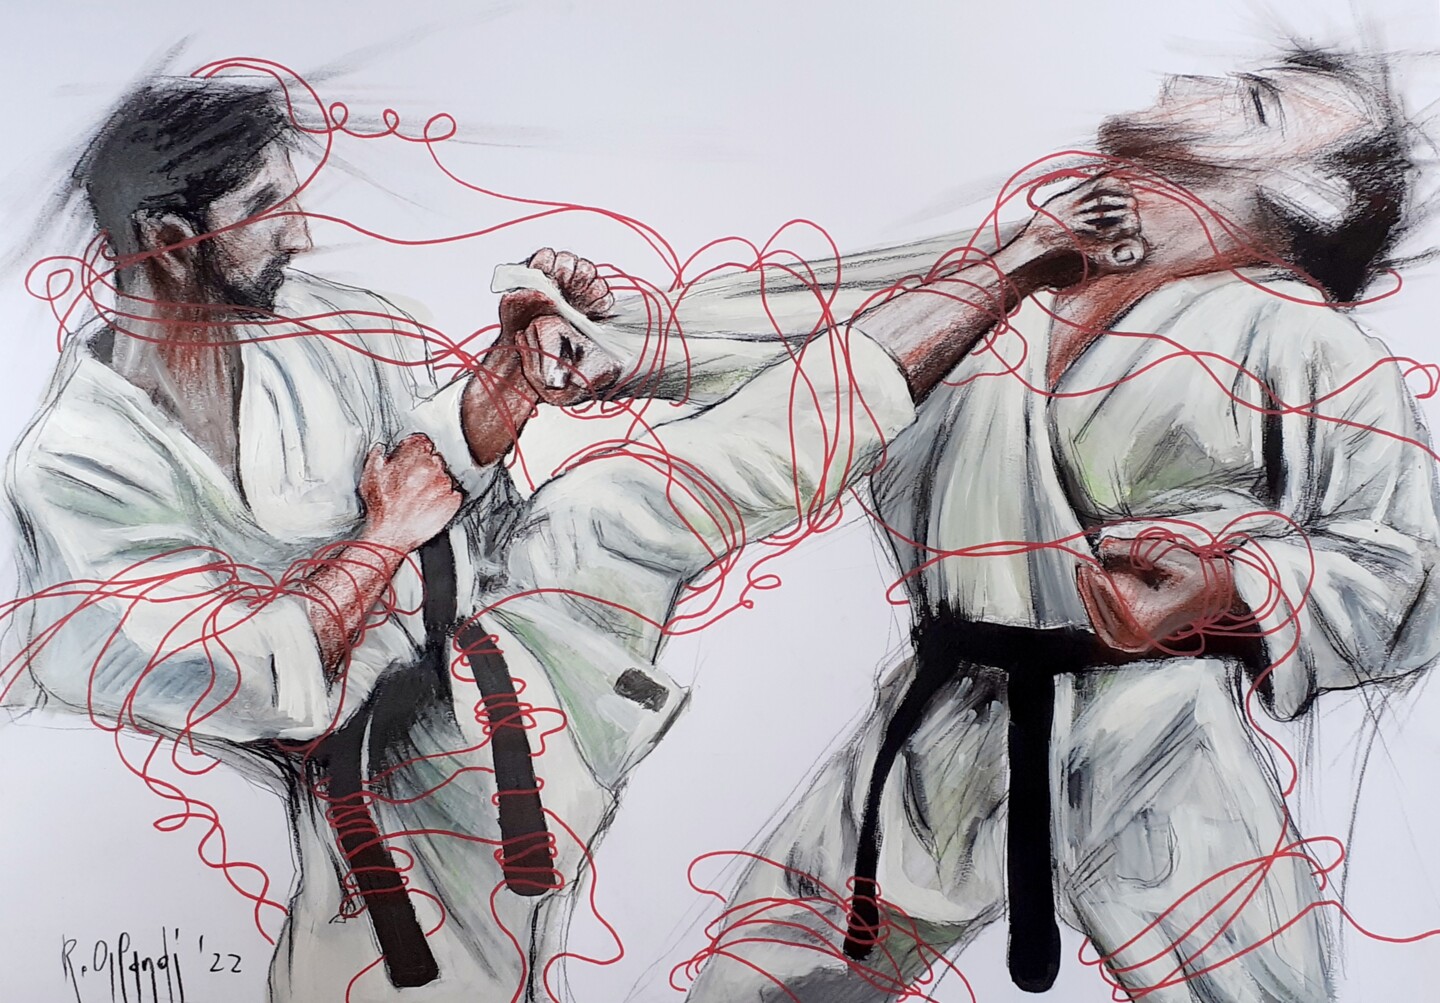 karate drawings